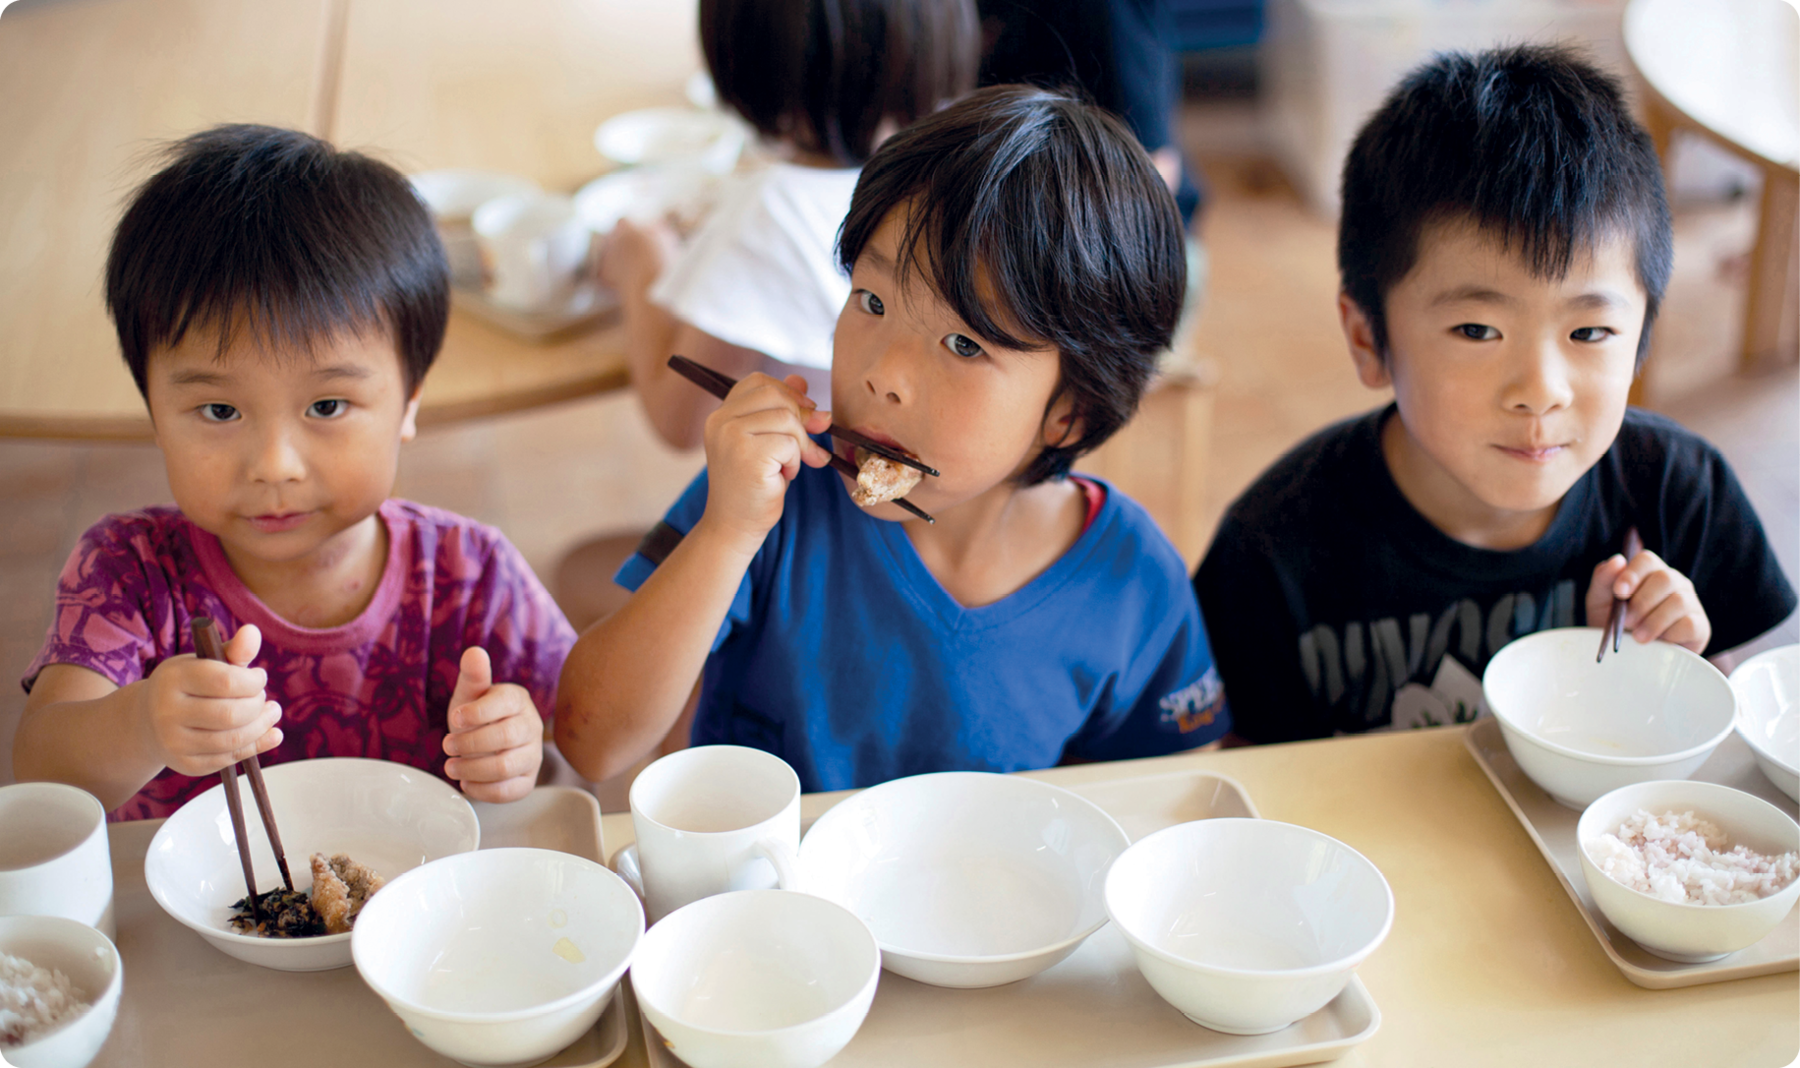 Fotografia. Três crianças japonesas, uma menina com cabelos lisos, usando blusa estampada. Ao lado, um menino usando blusa azul e outro menino usando blusa preta. Elas estão sentados, segurando com as mãos um hashi, duas varetas utilizadas como talheres. Na mesa, potes brancos com alimentos.